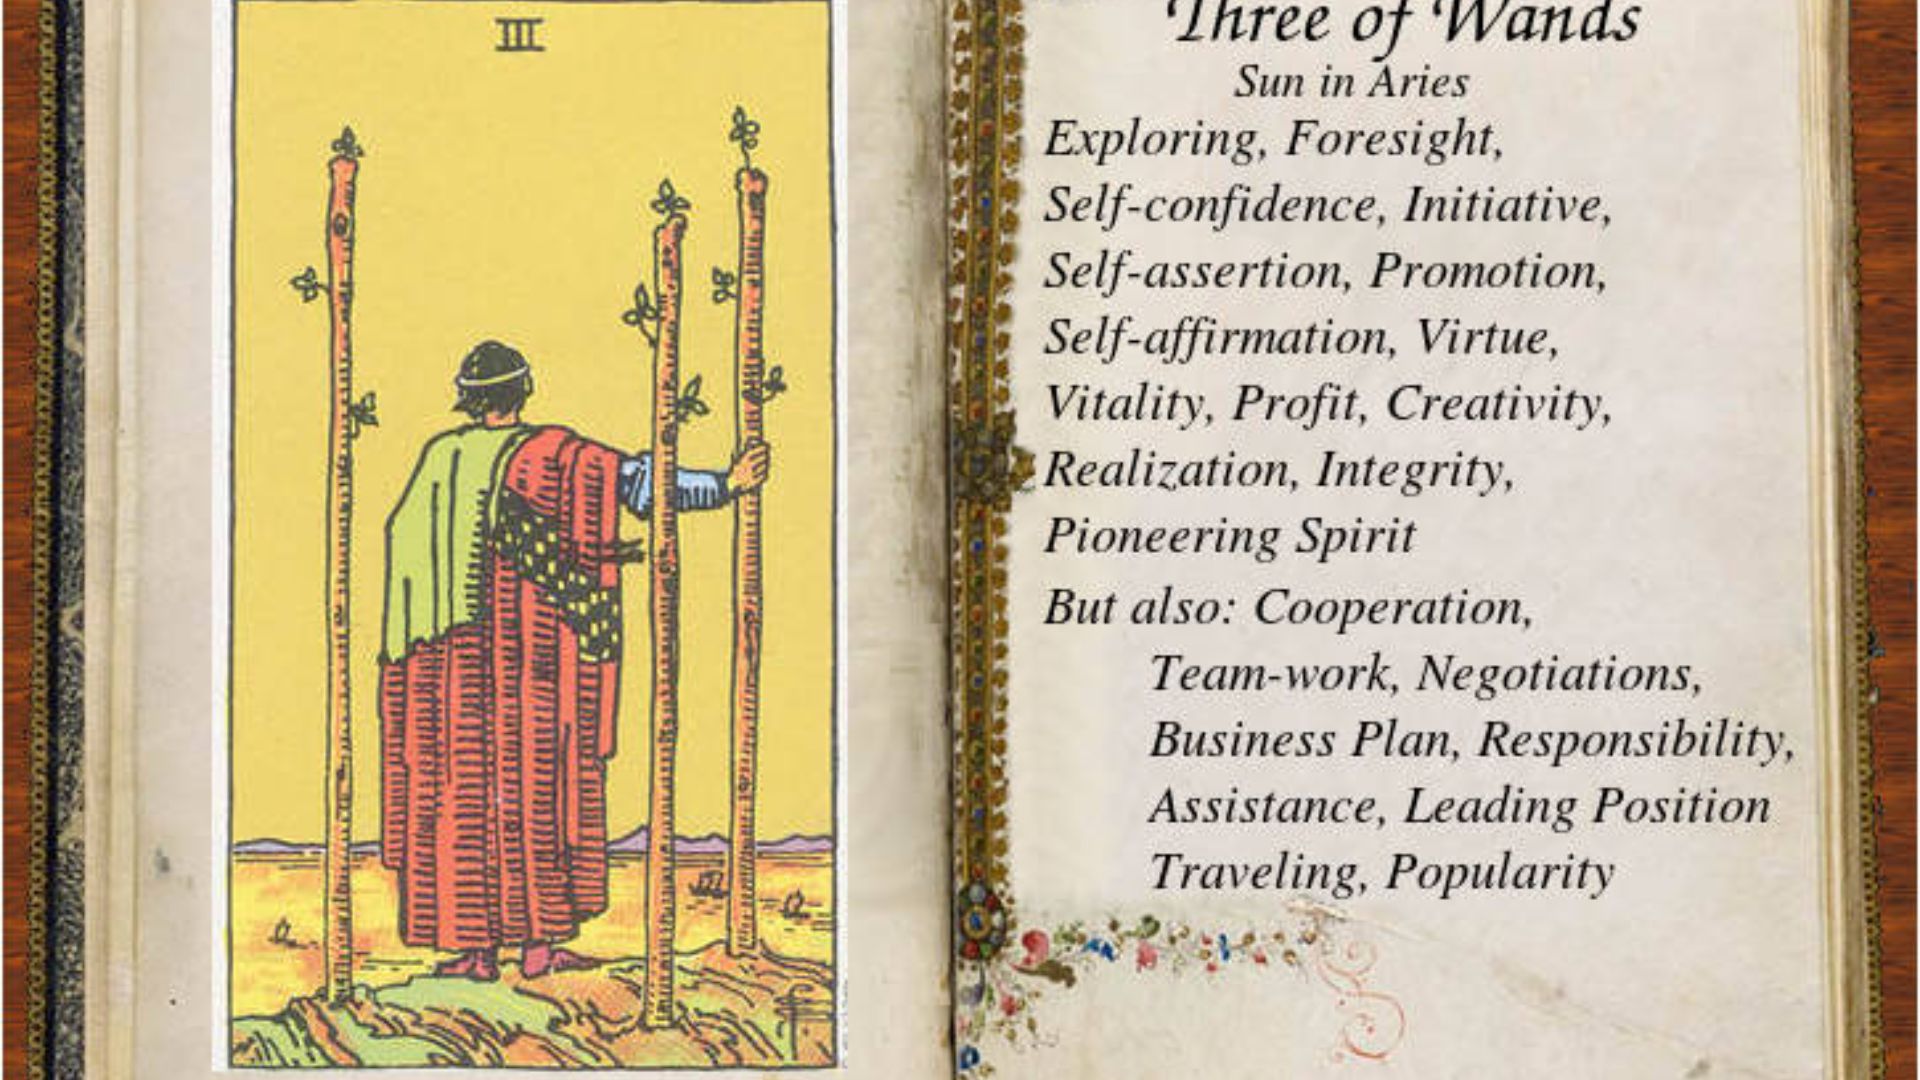 3 Of Wands Tarot Card Qualities